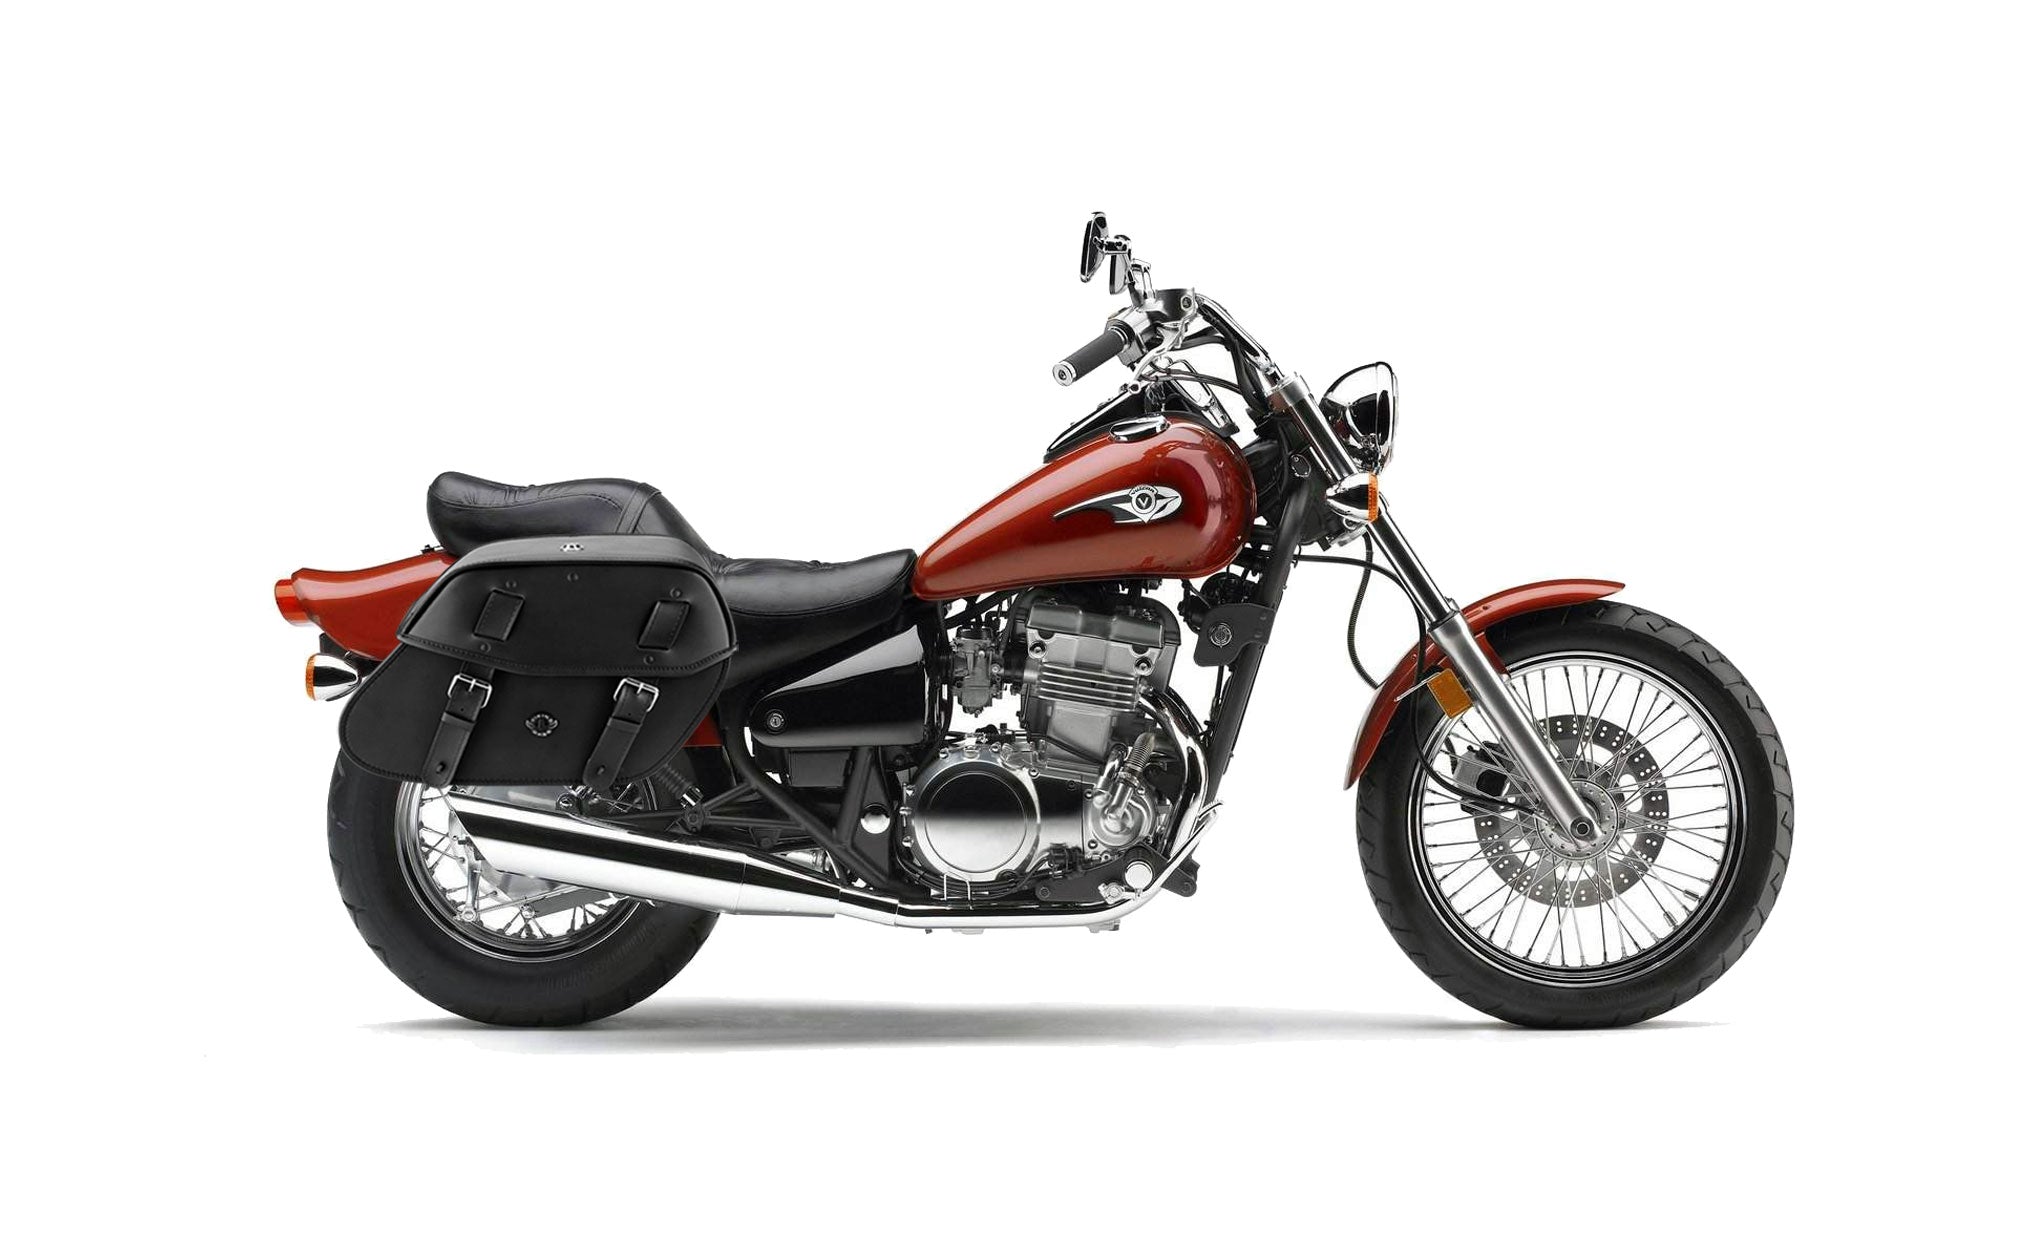 Viking Odin Large Kawasaki Vulcan 500 En500 Leather Motorcycle Saddlebags on Bike Photo @expand